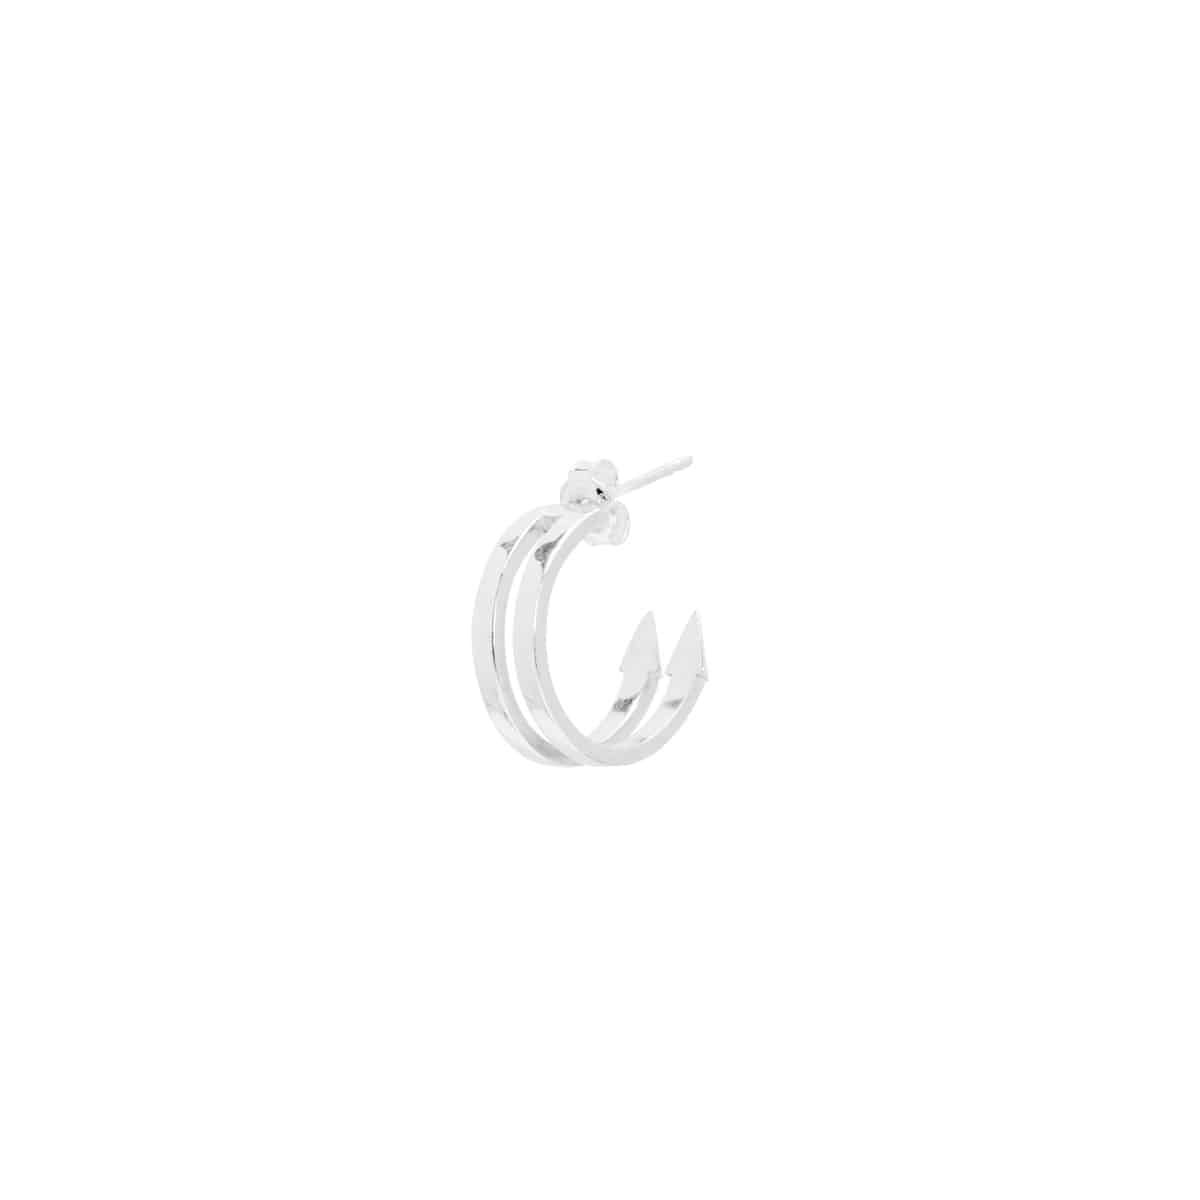 FENCE DOUBLE earring (SILVER)-Single piece- 